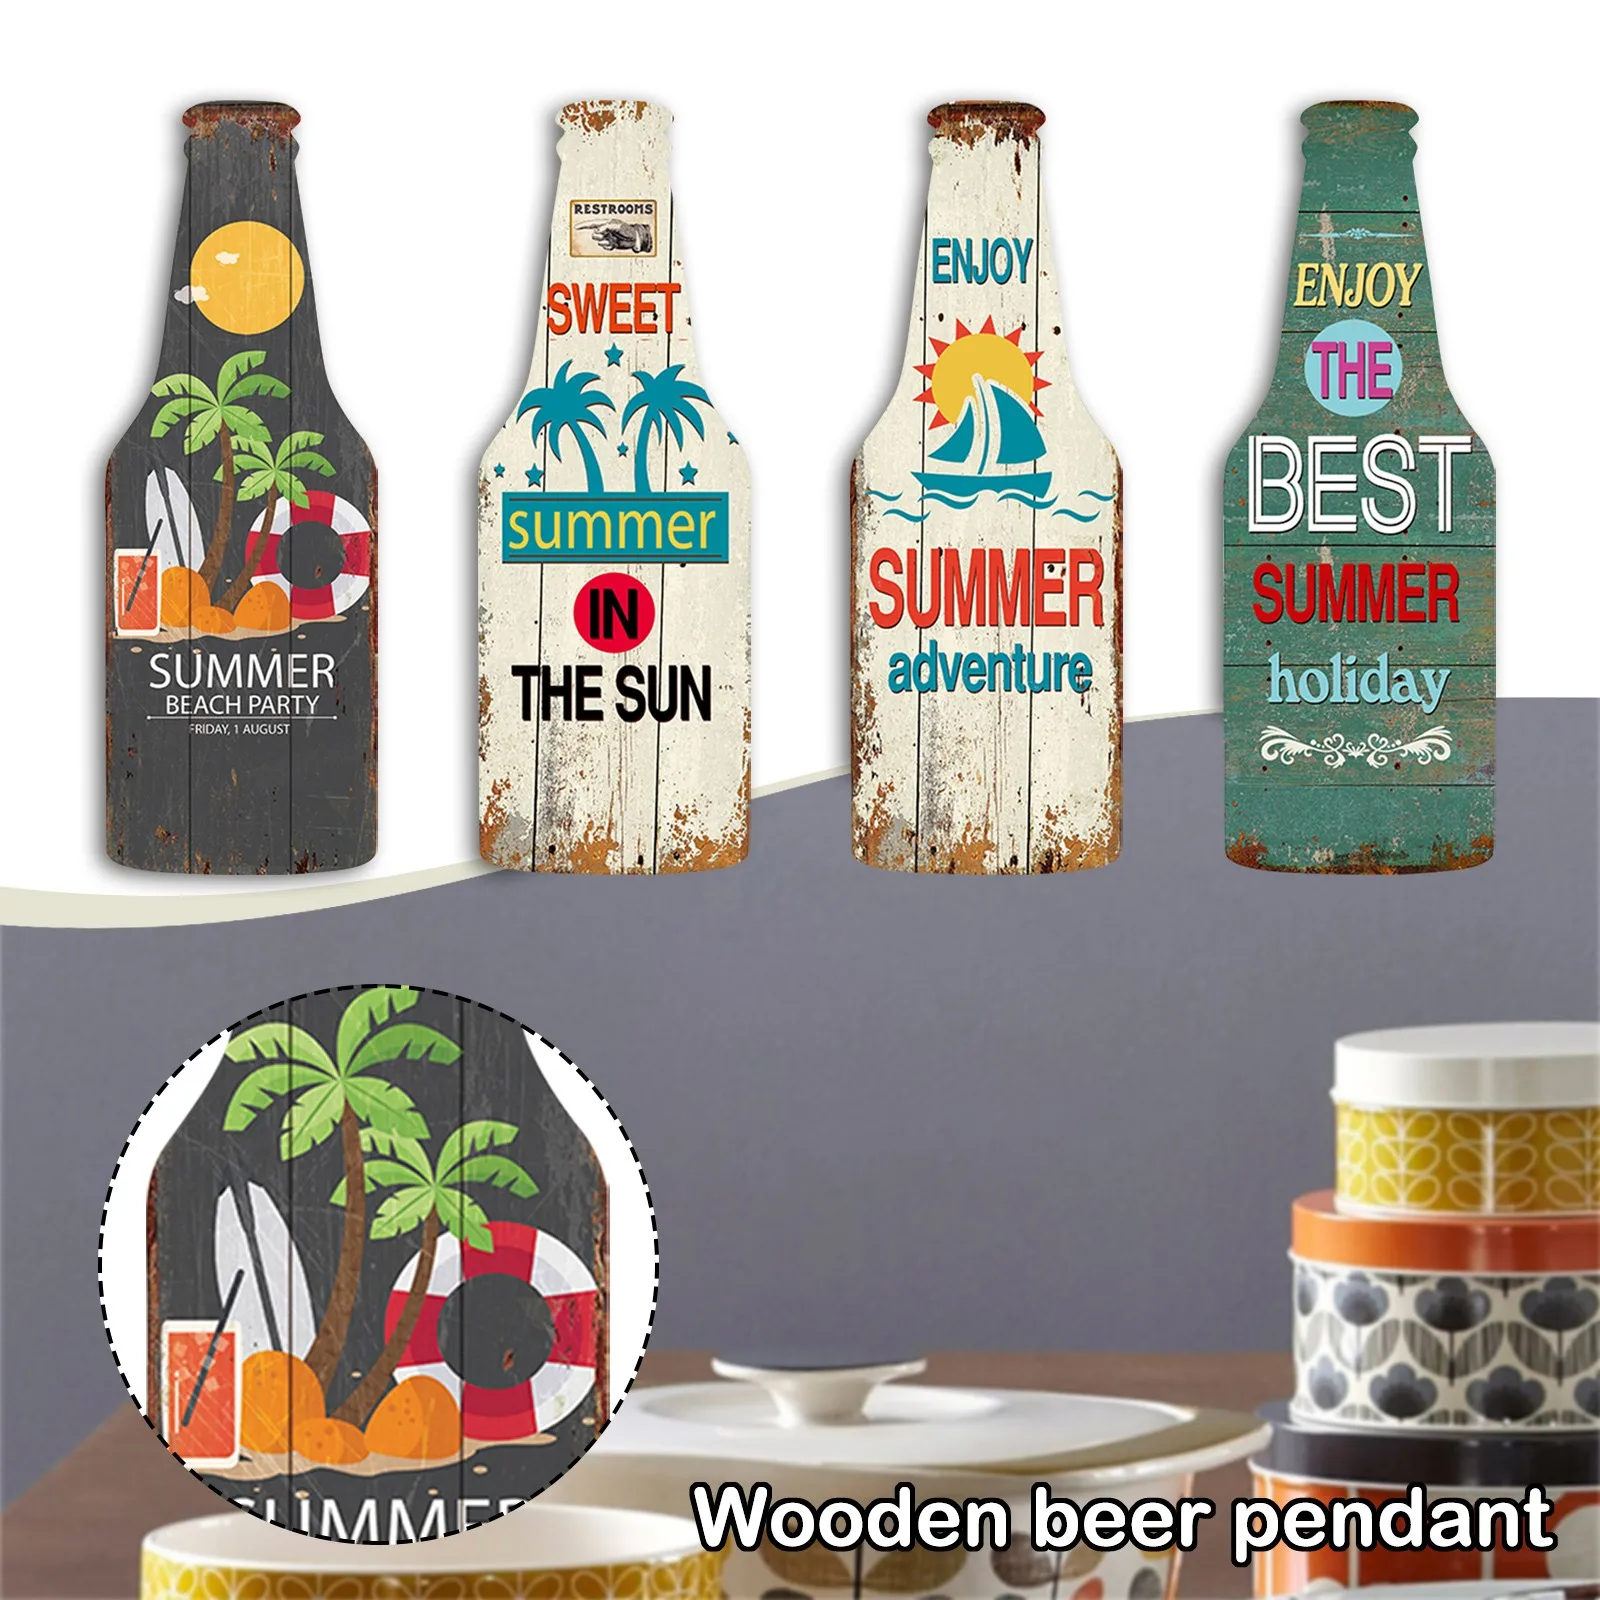 

Деревянная подвеска в виде бутылки пива, Настенный декор, праздничный бар, домашний декор в ретро стиле, винтажная деревянная печать, деревянная вывеска в пляжном стиле